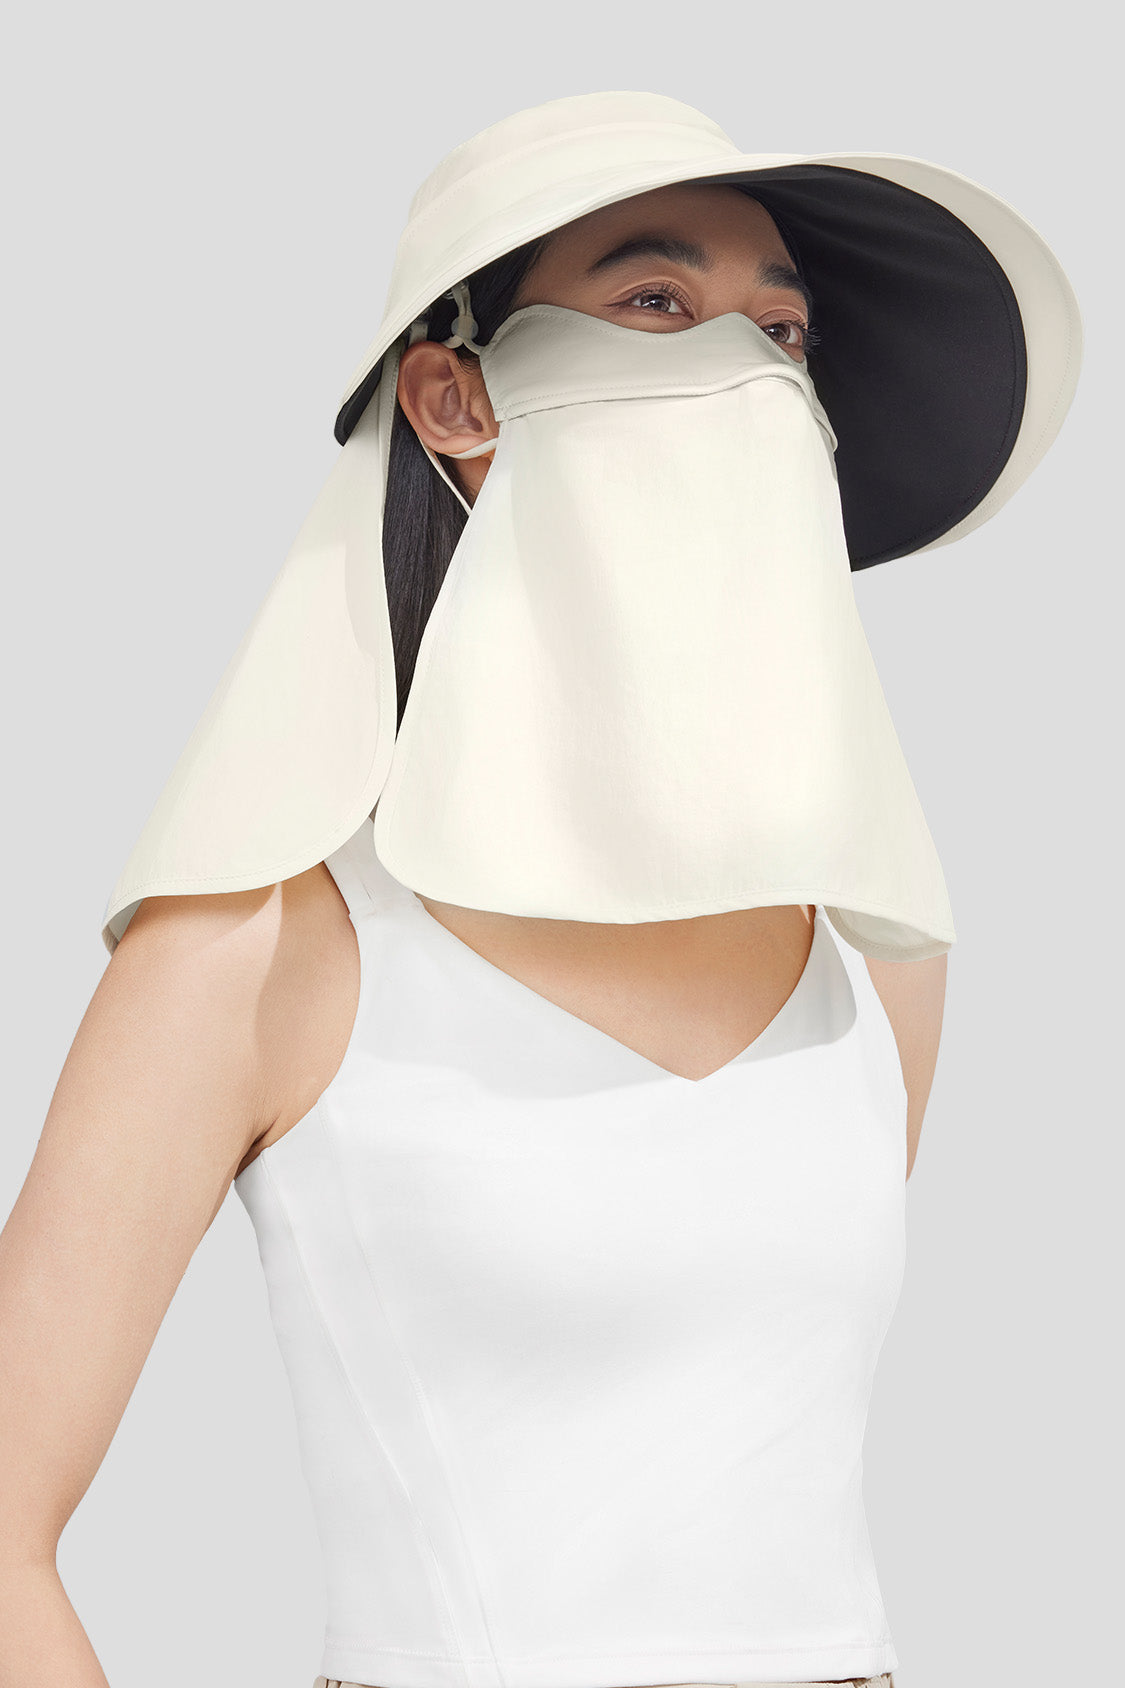 beneuder women's sun hats #color_cremy white